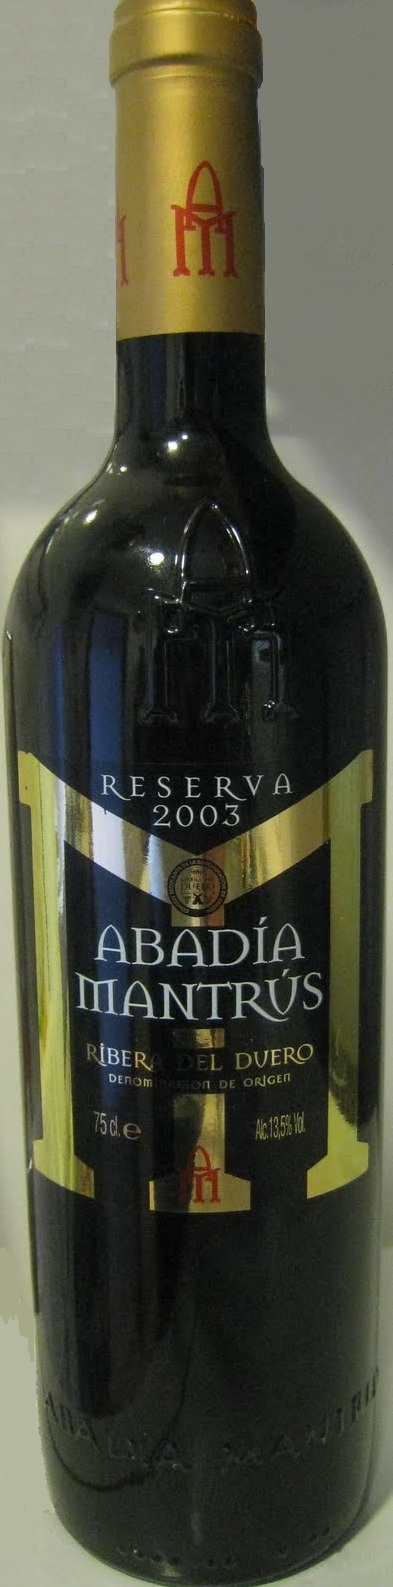 Bild von der Weinflasche Abadía Mantrus Tinto Reserva